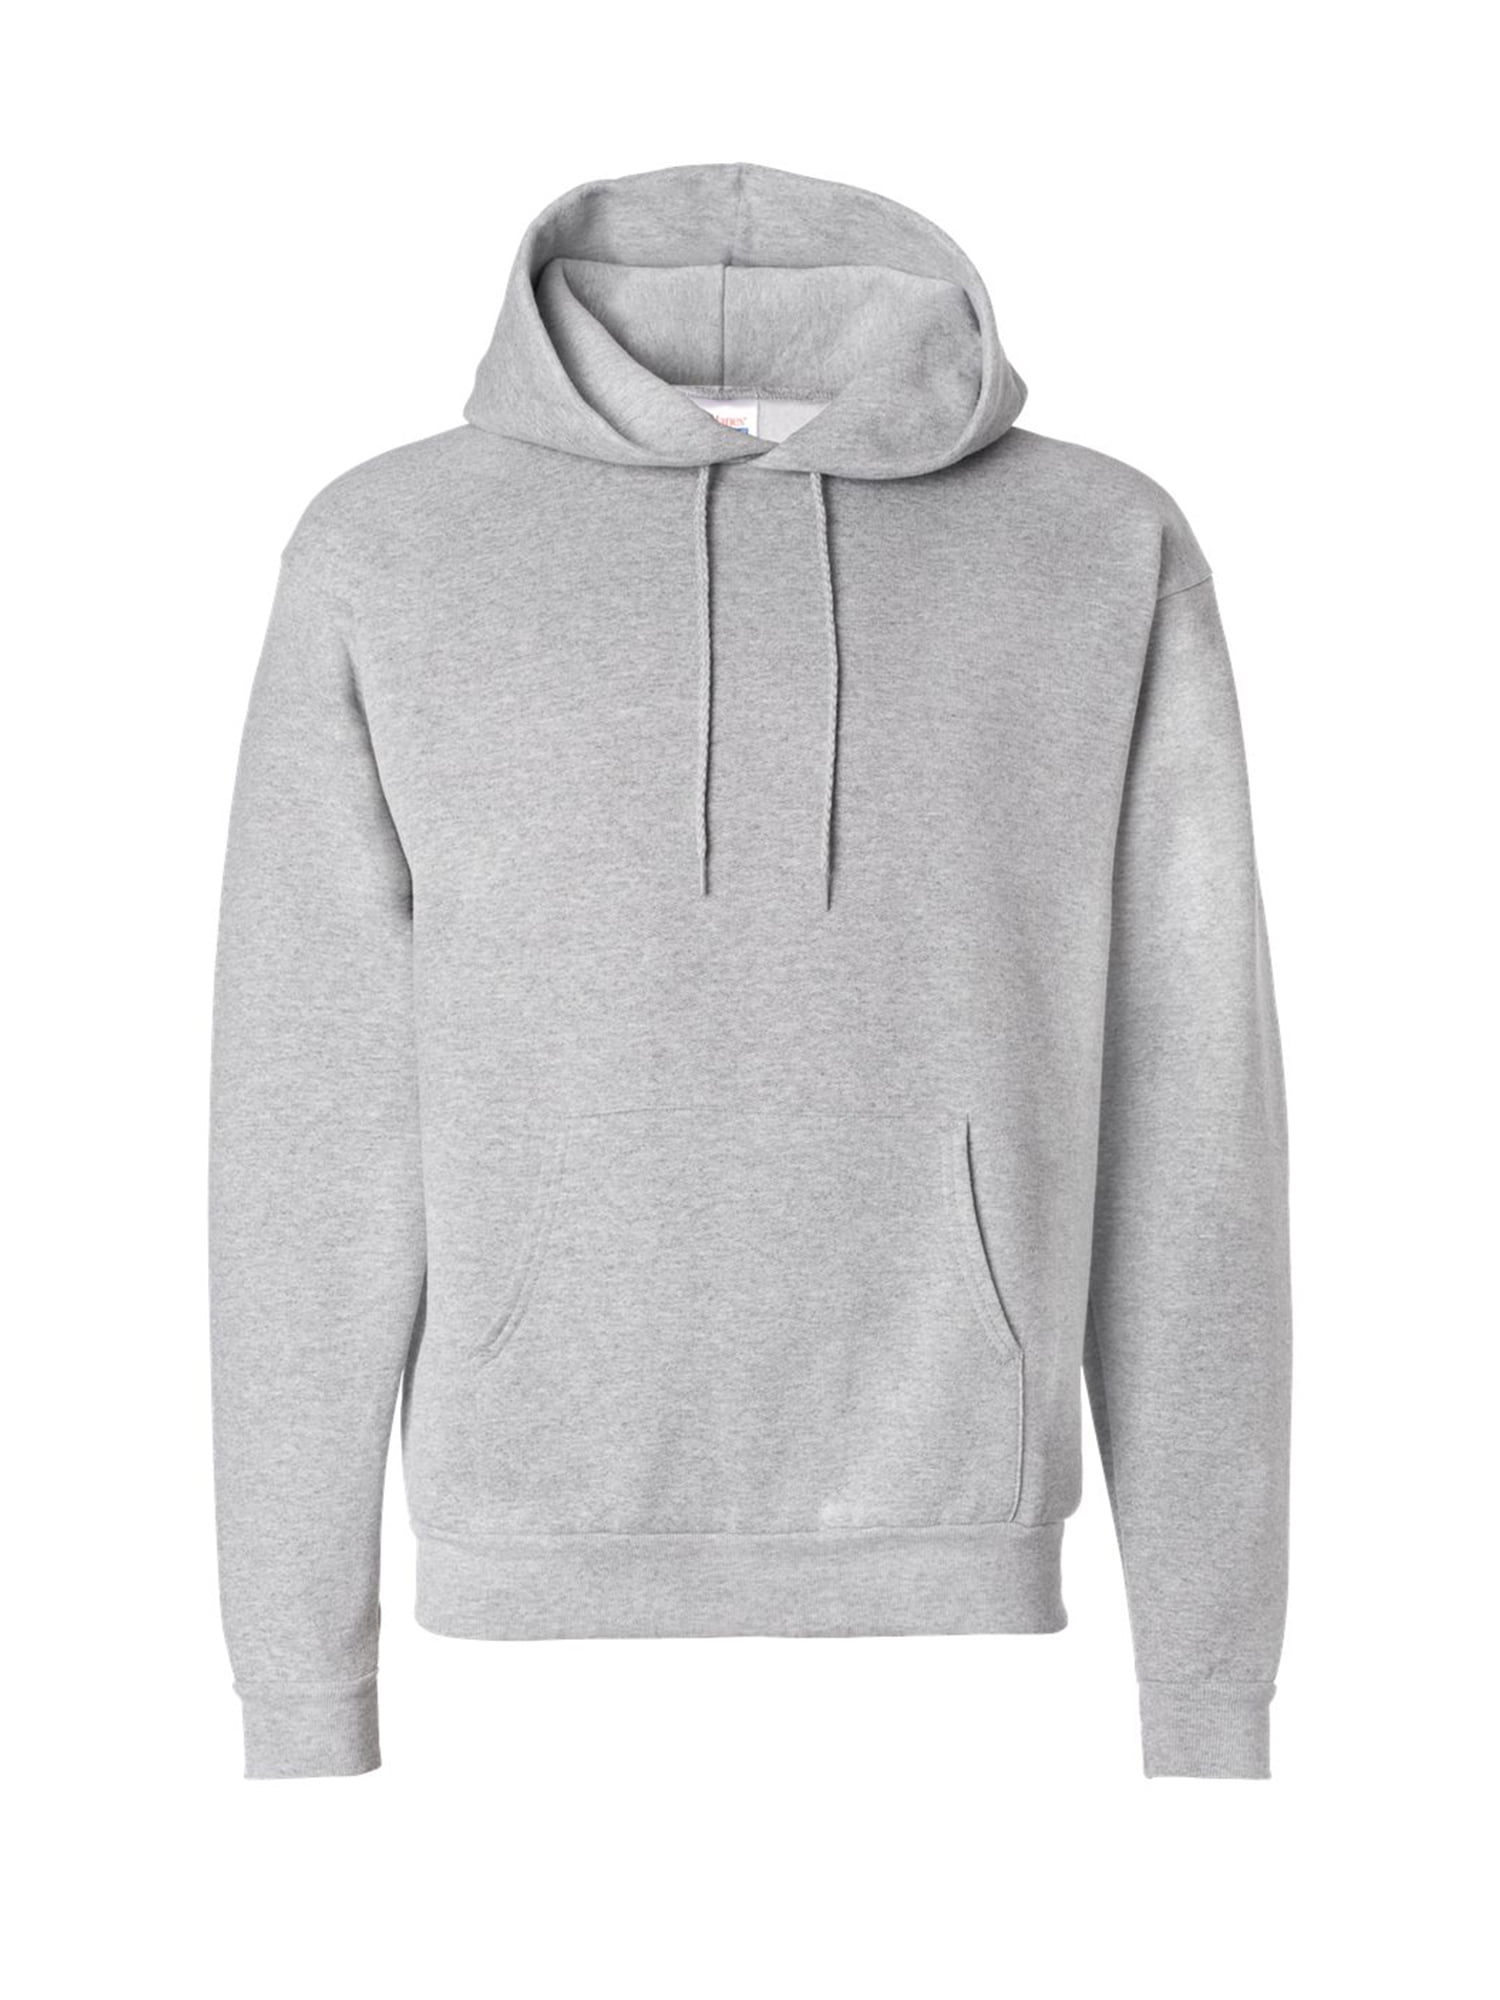 Unisex Hanes Ecosmart Hooded Sweatshirt for Men Hanes Hoodie for Women ...